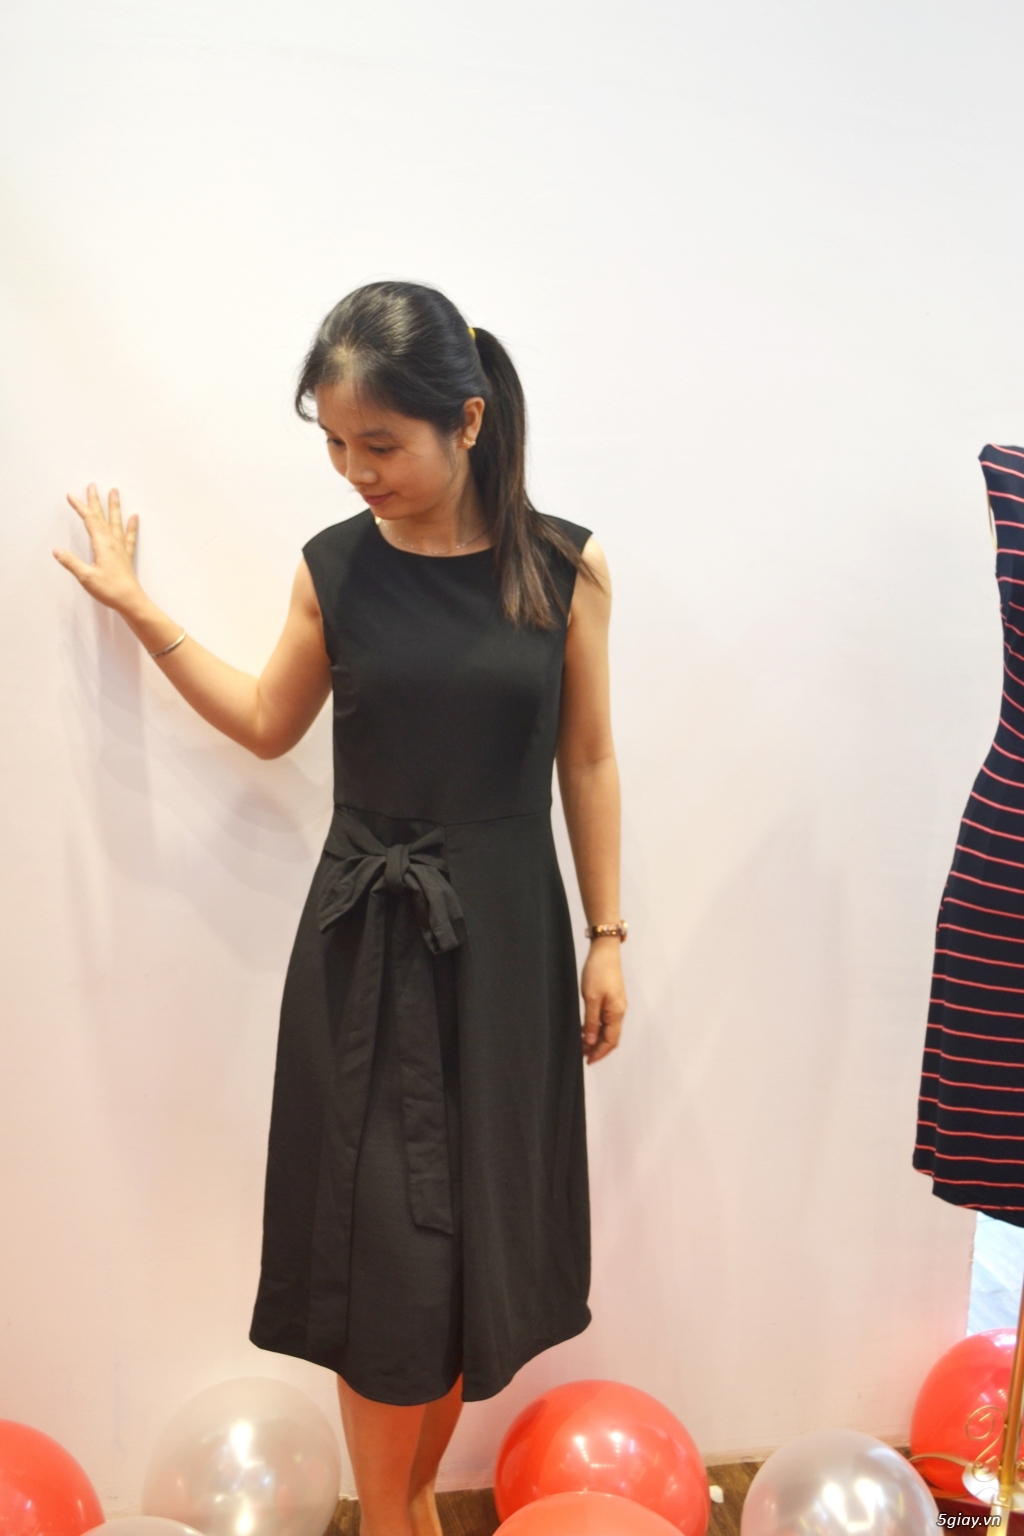 Pi STORE: Thương hiệu quần áo nữ cao cấp cho các tín đồ thời trang - 19